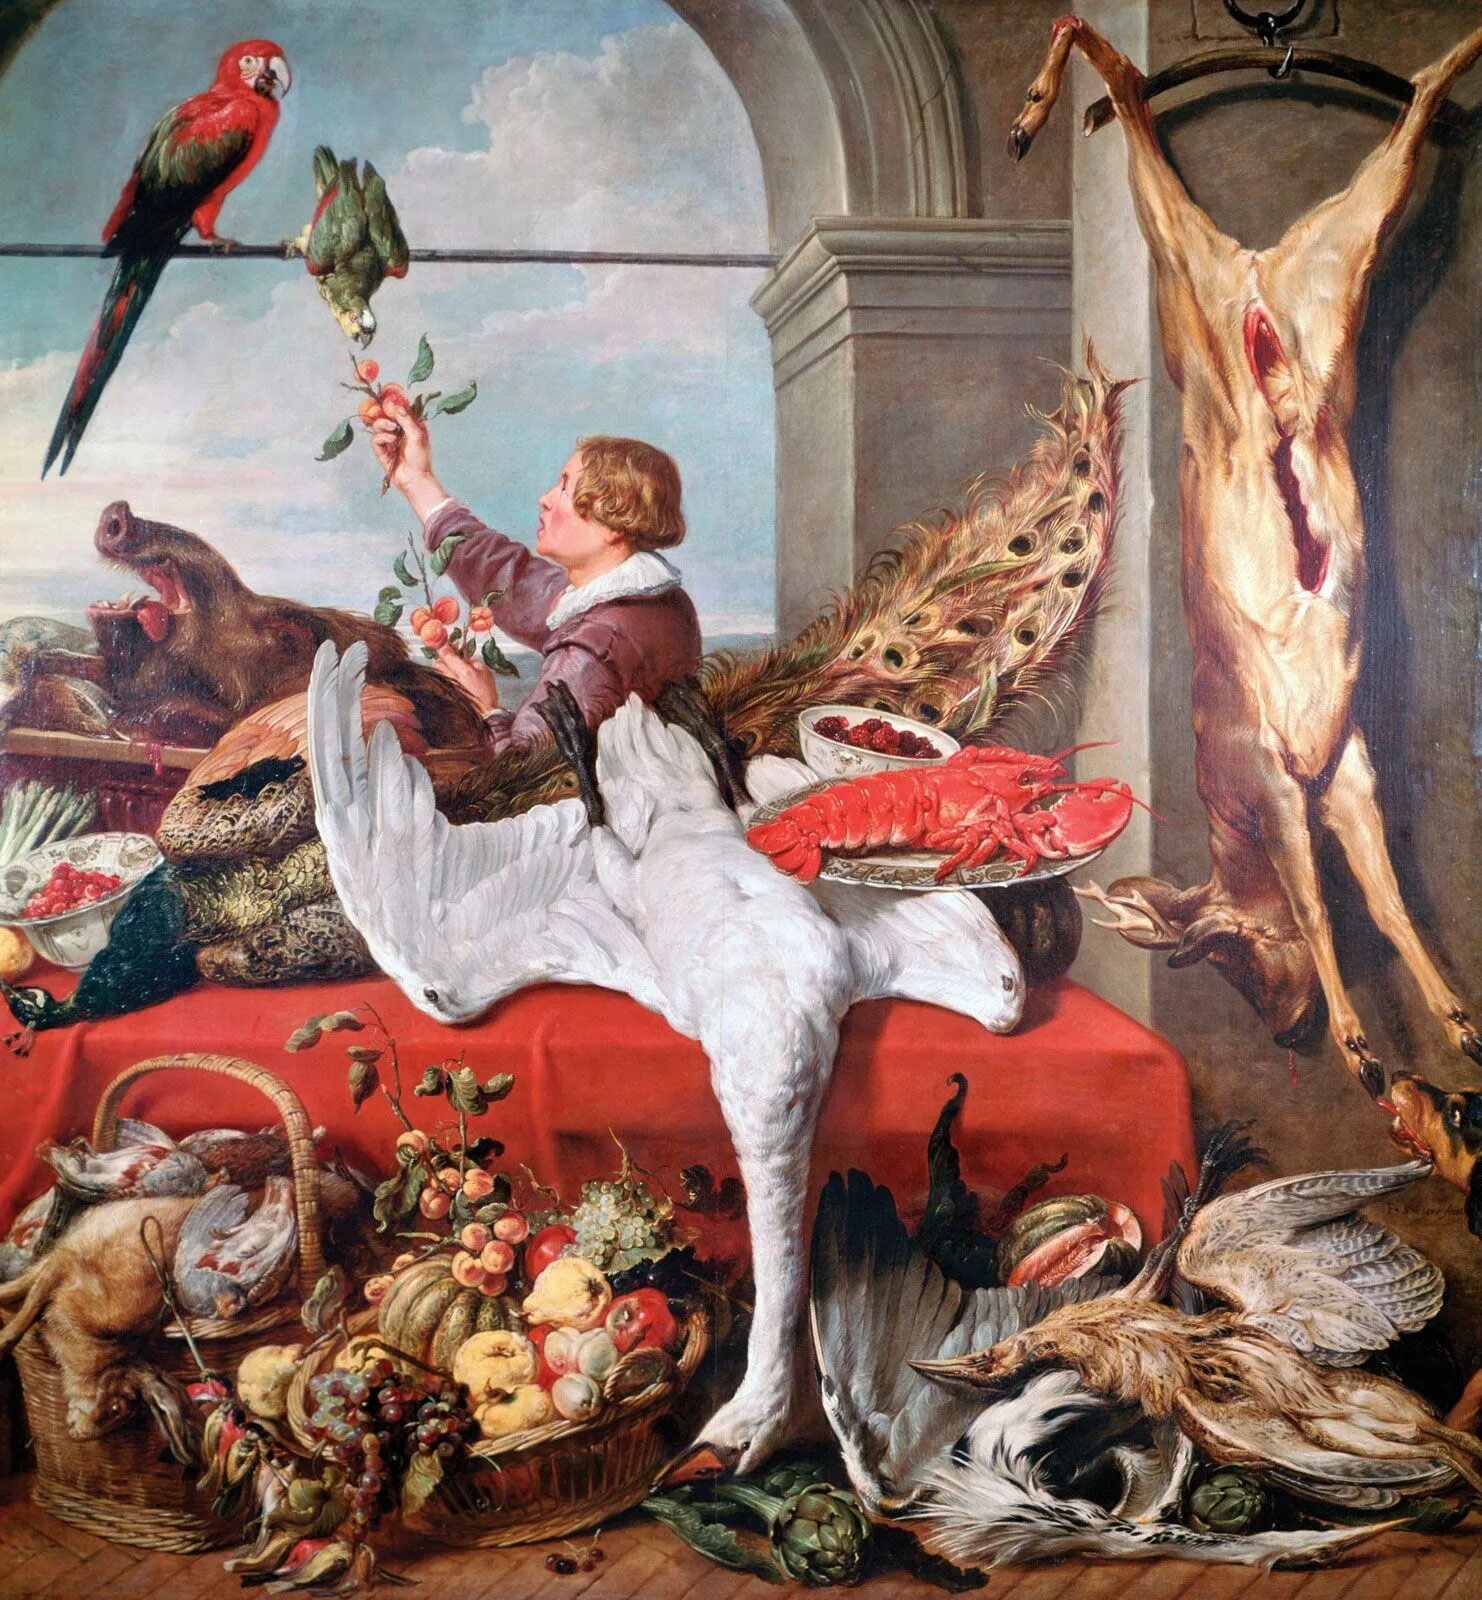 Снейдерс художник. Франс Снейдерс. Франс Снейдерс (1579—1657). Франс Снейдерс художник. Франс Снейдерс фламандские живописцы Барокко.